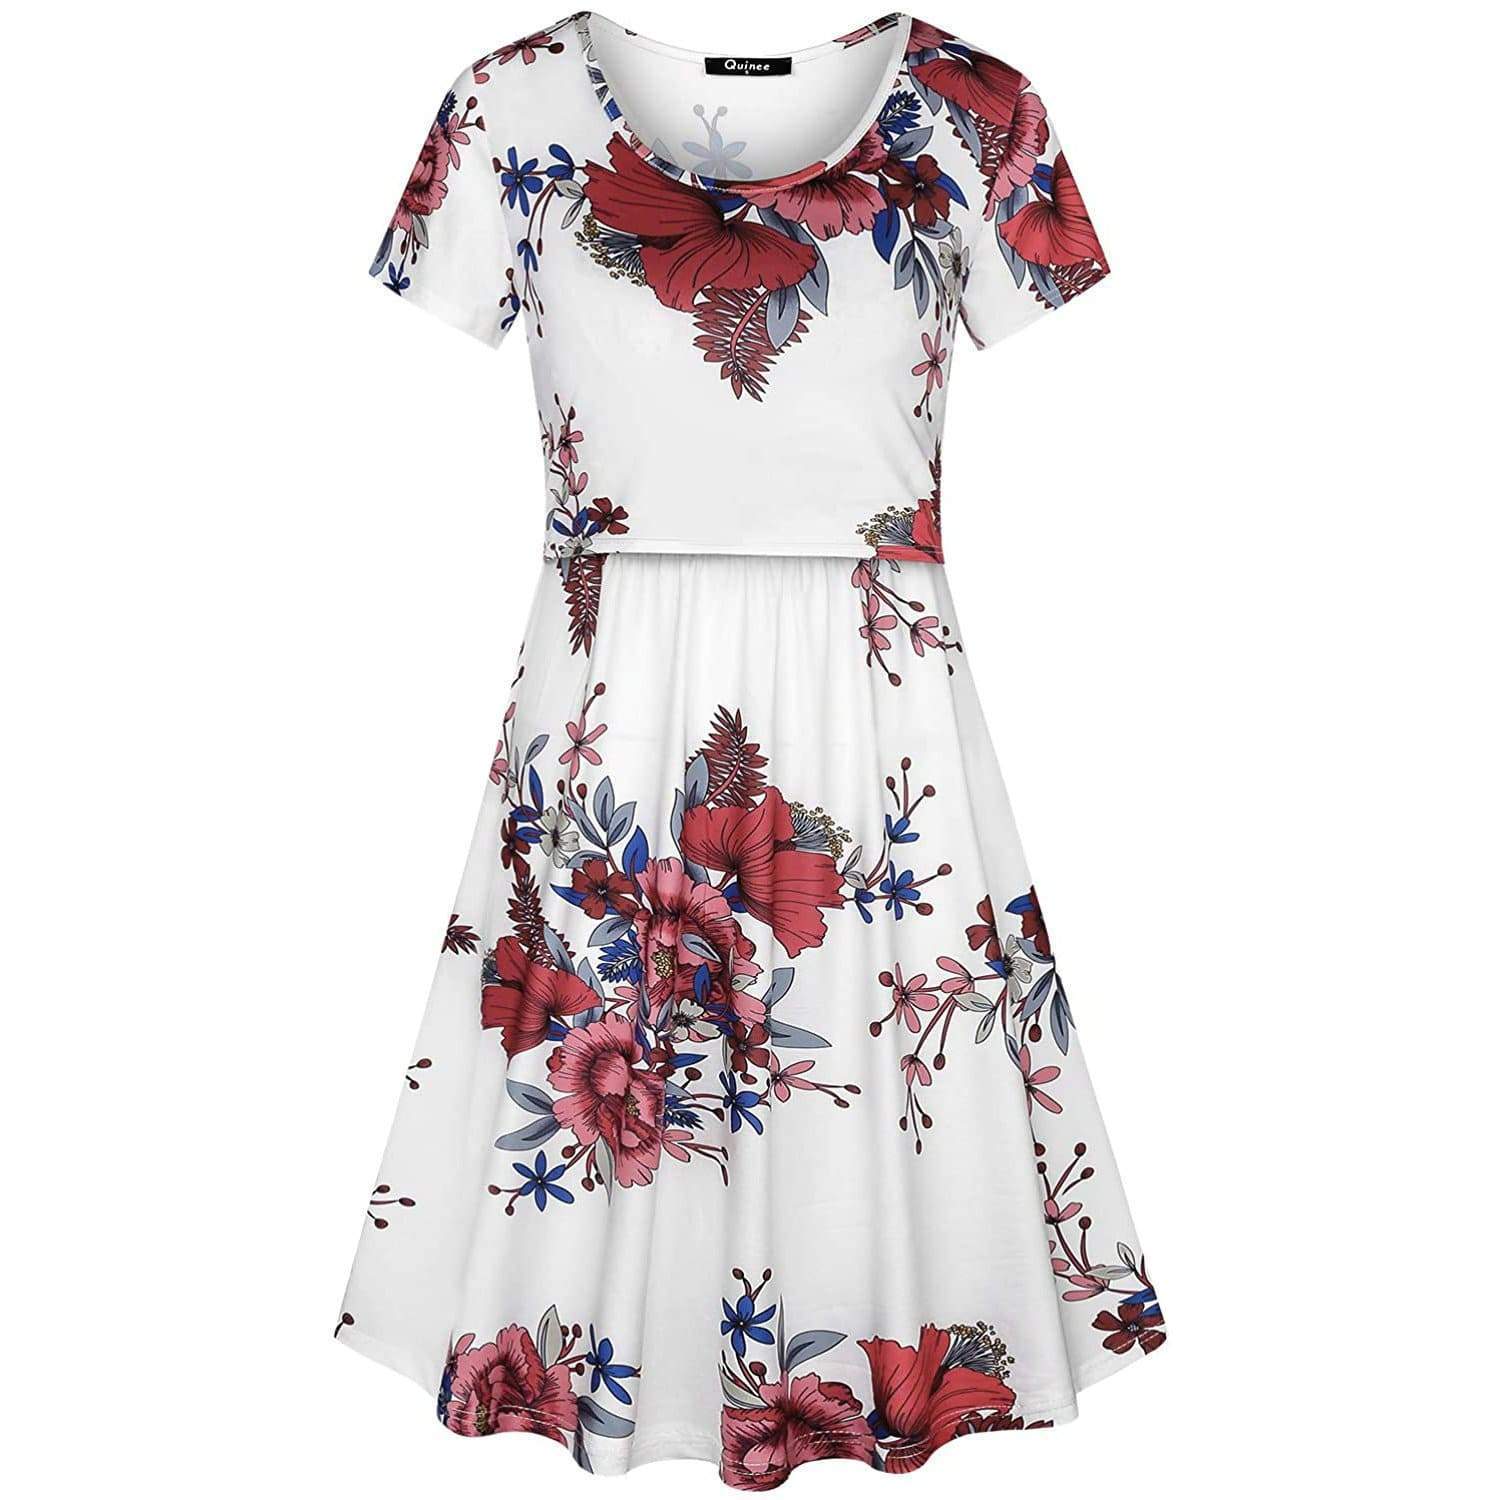 Floral short-sleeved nursing dress